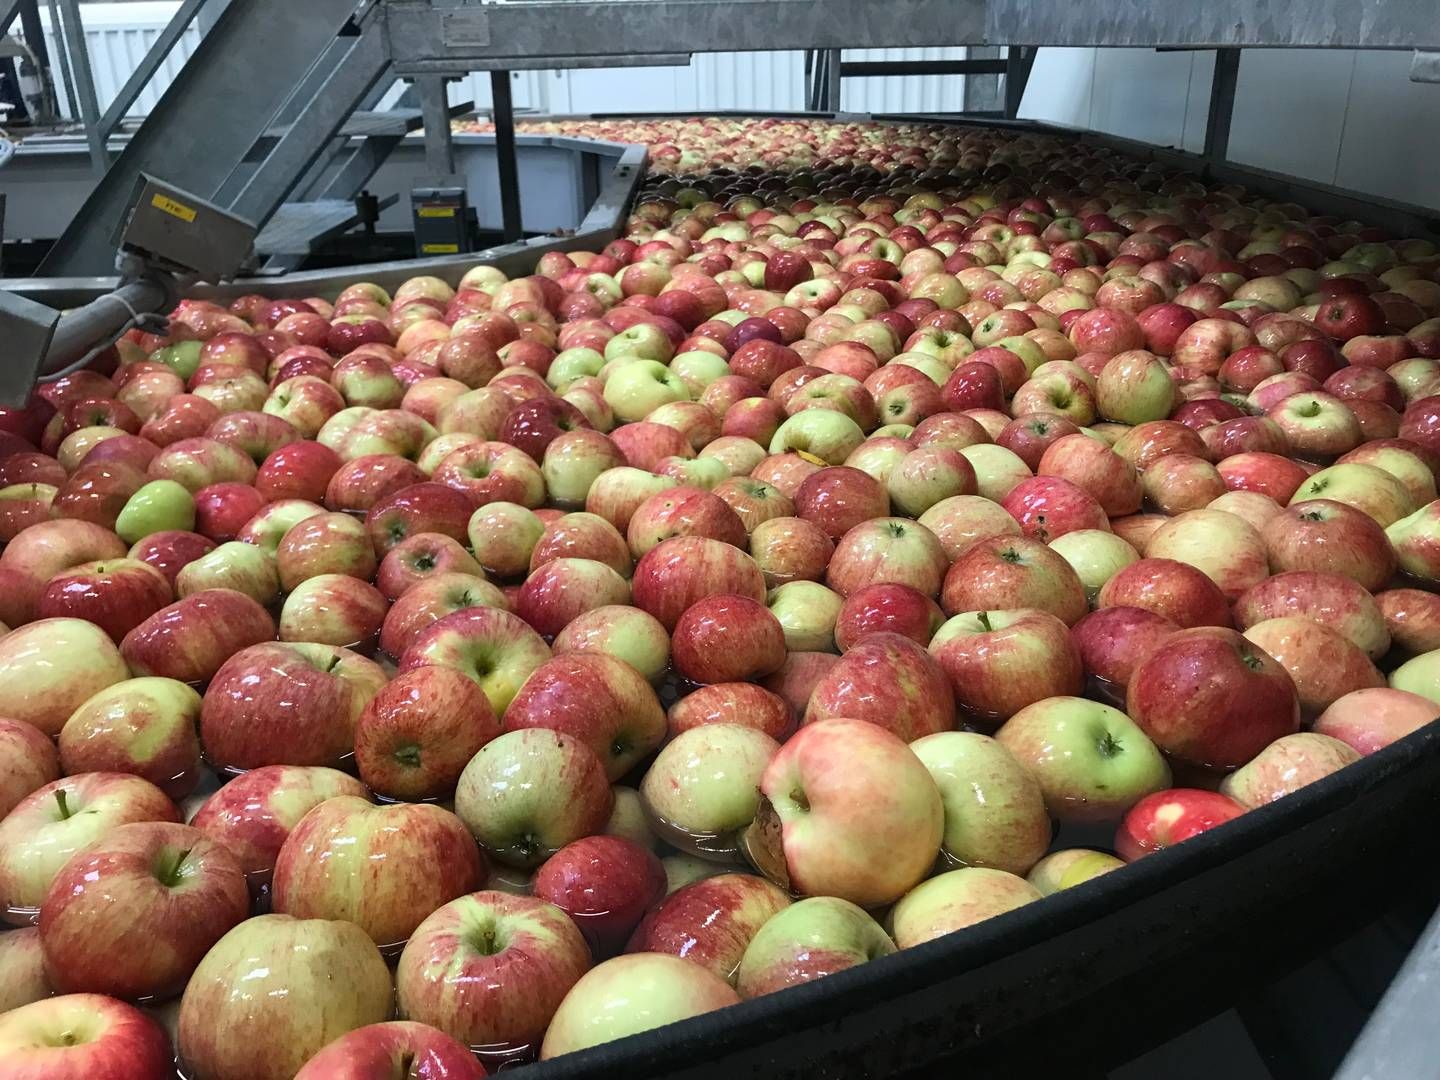 Danske æbler, pærer og andet frugt har det svært i konkurrencen med udlandet og oveni presser høje omkostninger en af landets absolut største frugt- og bæraktører. | Foto: Torben Salomonsen